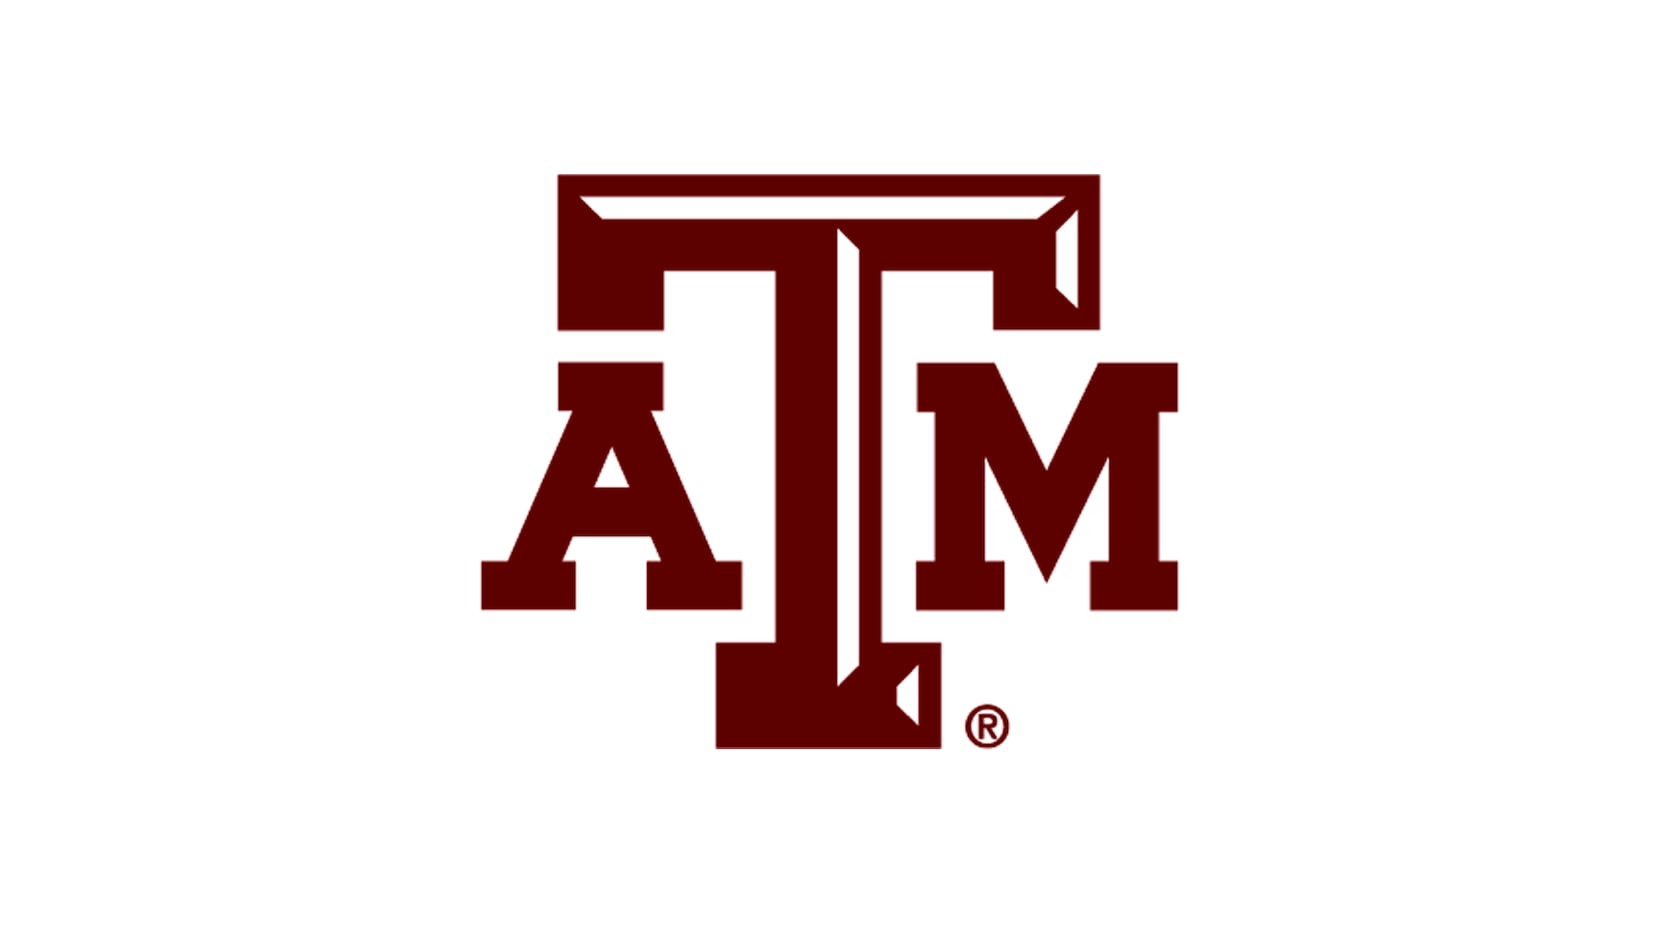 Texas A&M Aggies logo.